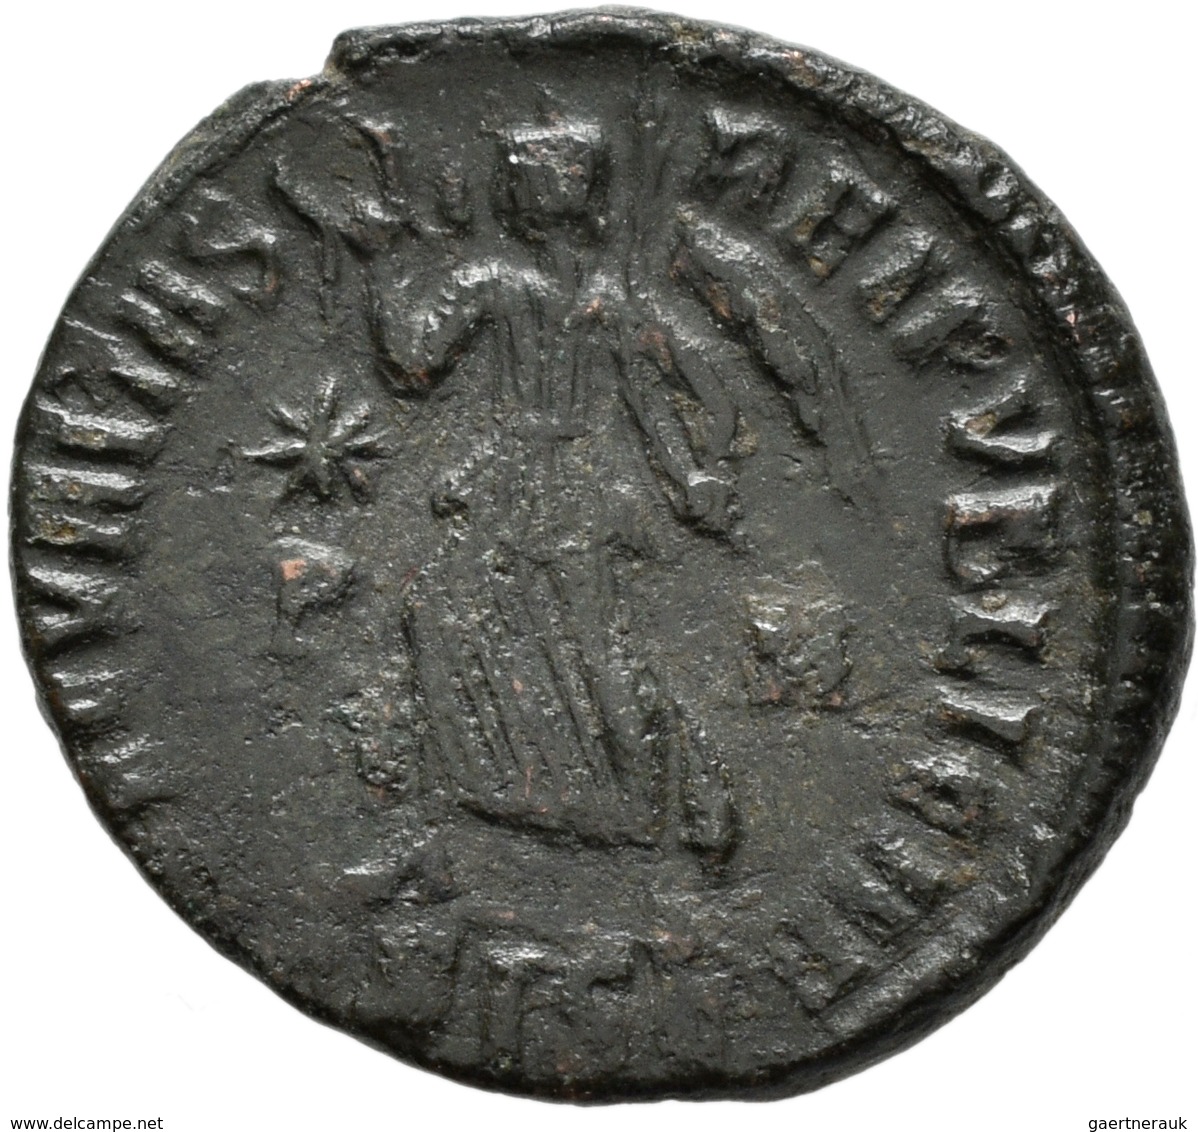 Antike: Lot von 48 antiker, meist römischer Kleinbronzemünzen aus der römischen Kaiserzeit, diverse